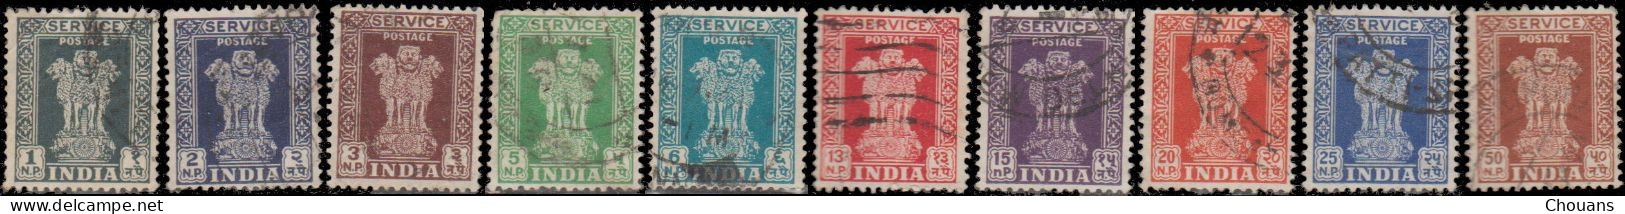 Inde Service 1957/58 - S 14 à 22 -  Colonne D'Asoka - Timbres De Service